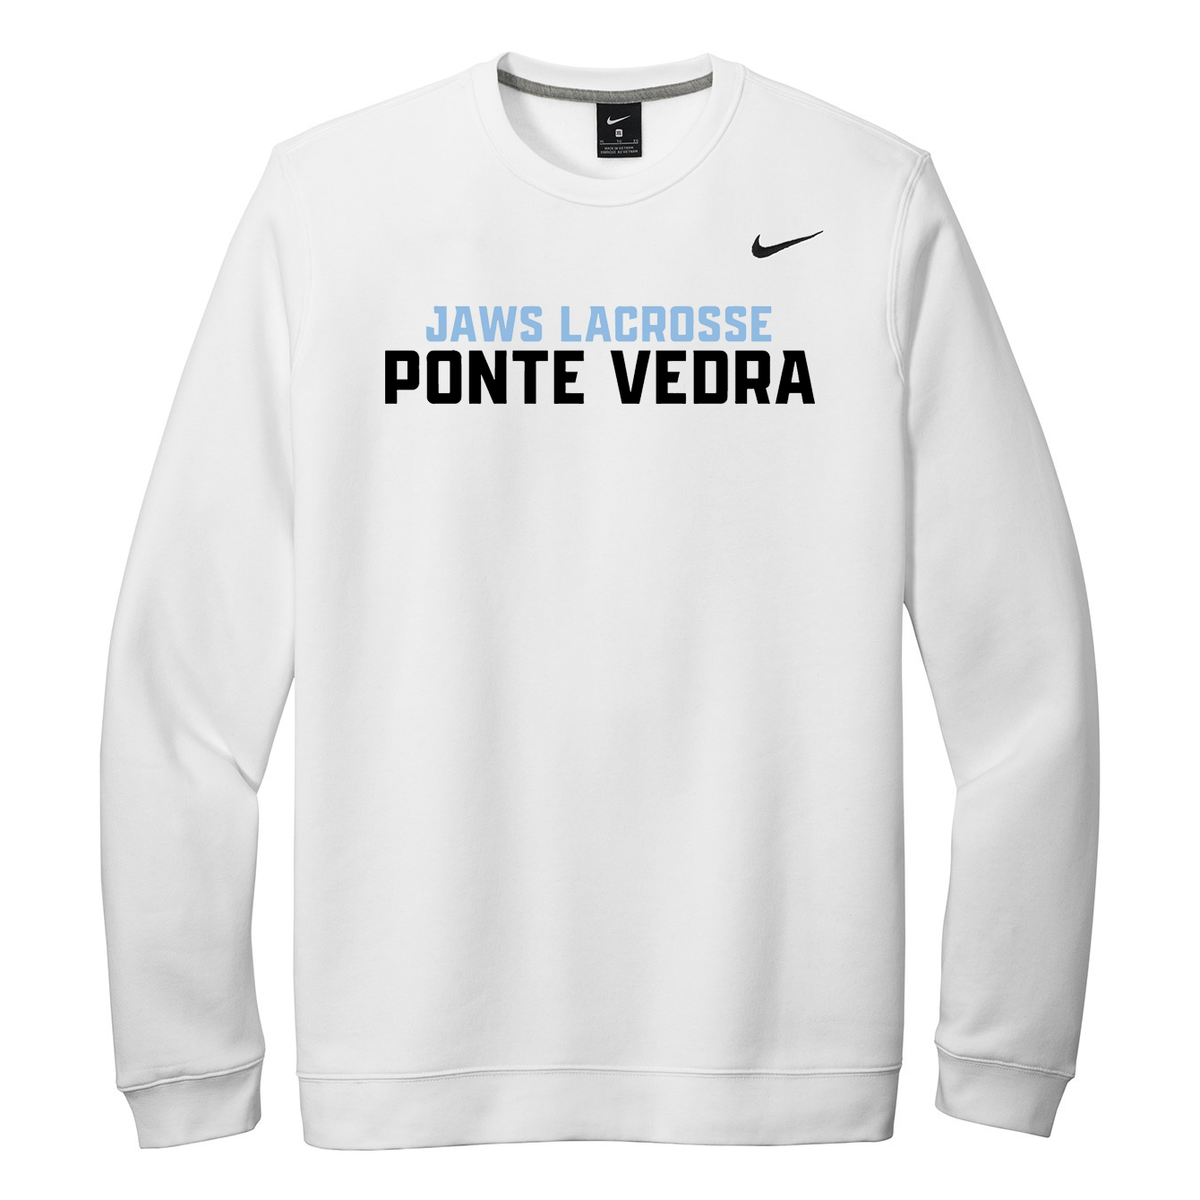 Ponte Vedra JAWS Lacrosse Nike Fleece Crew Neck